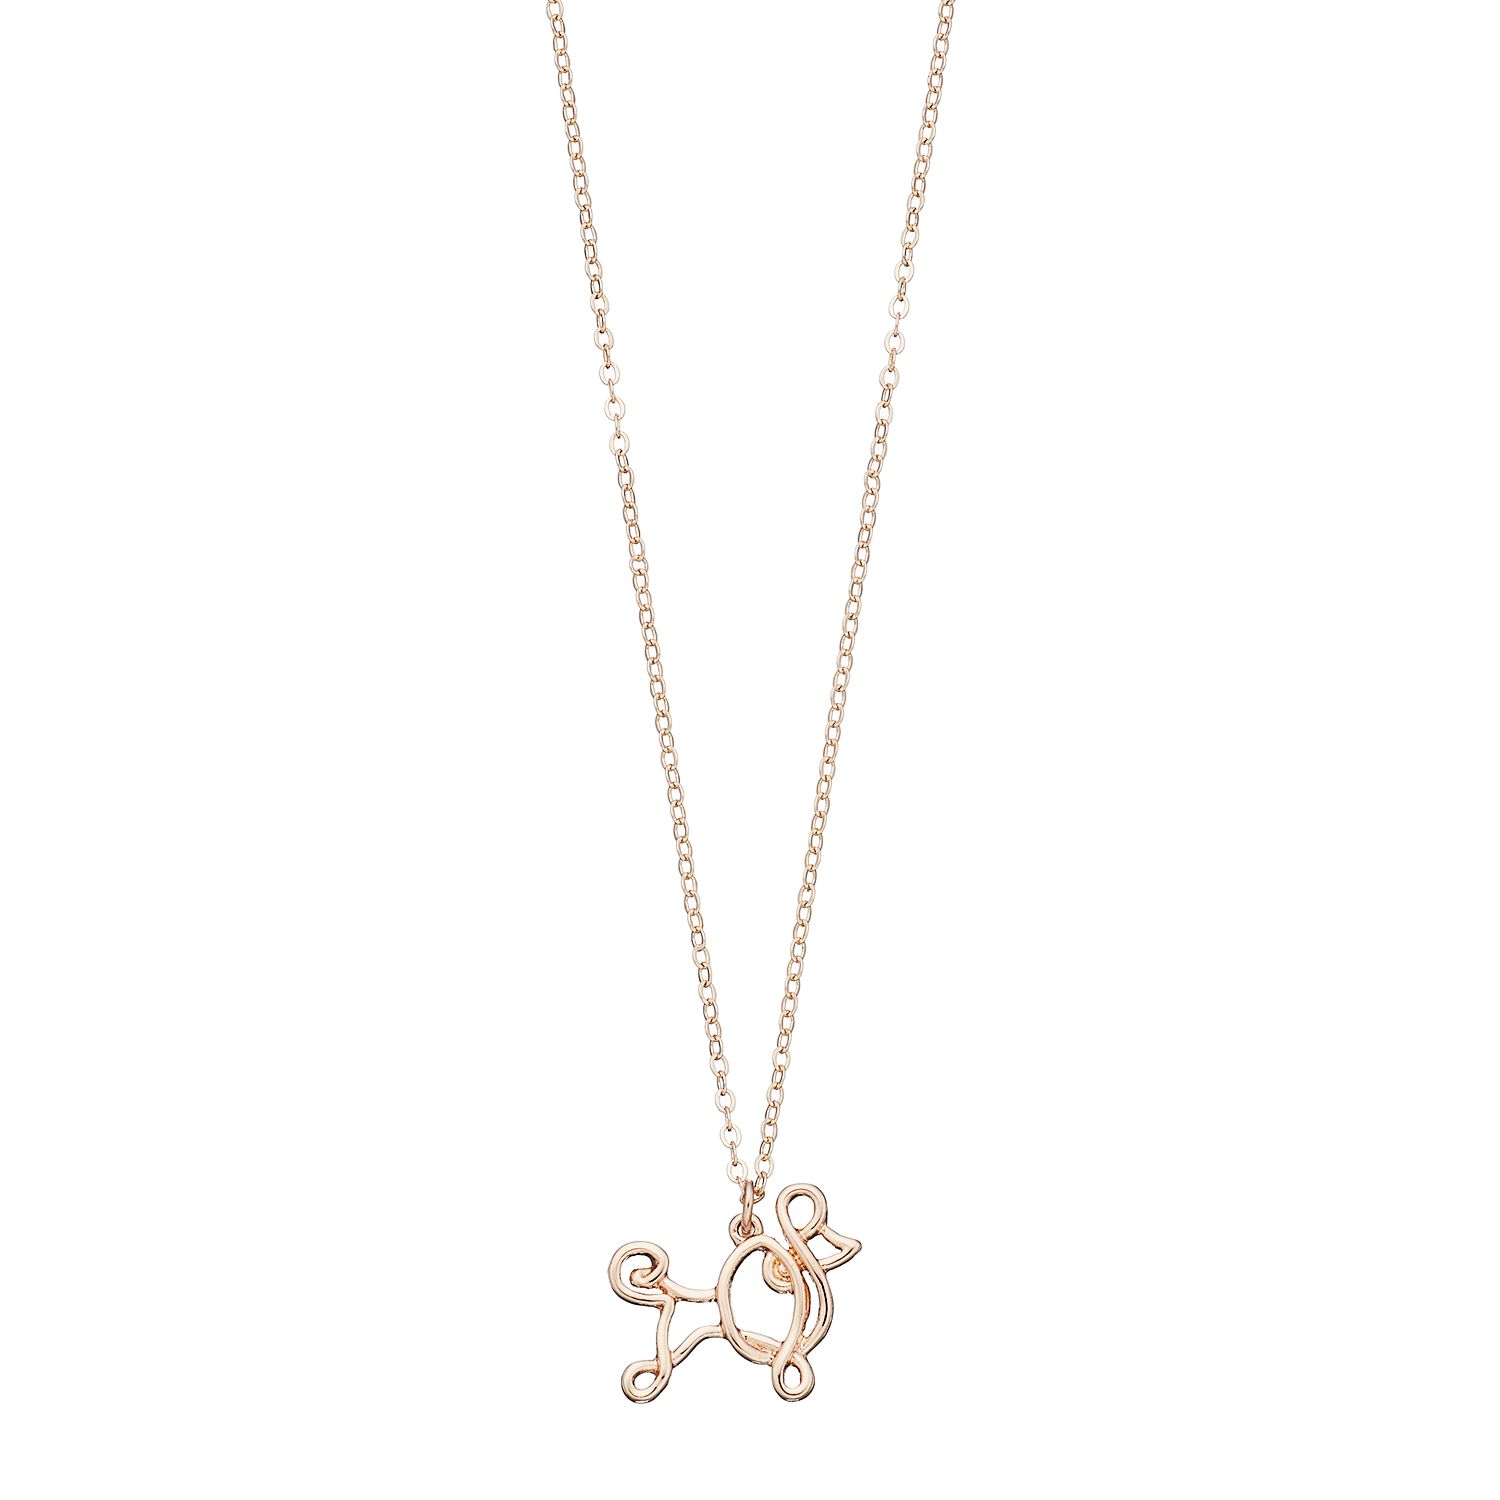 poodle pendant necklace